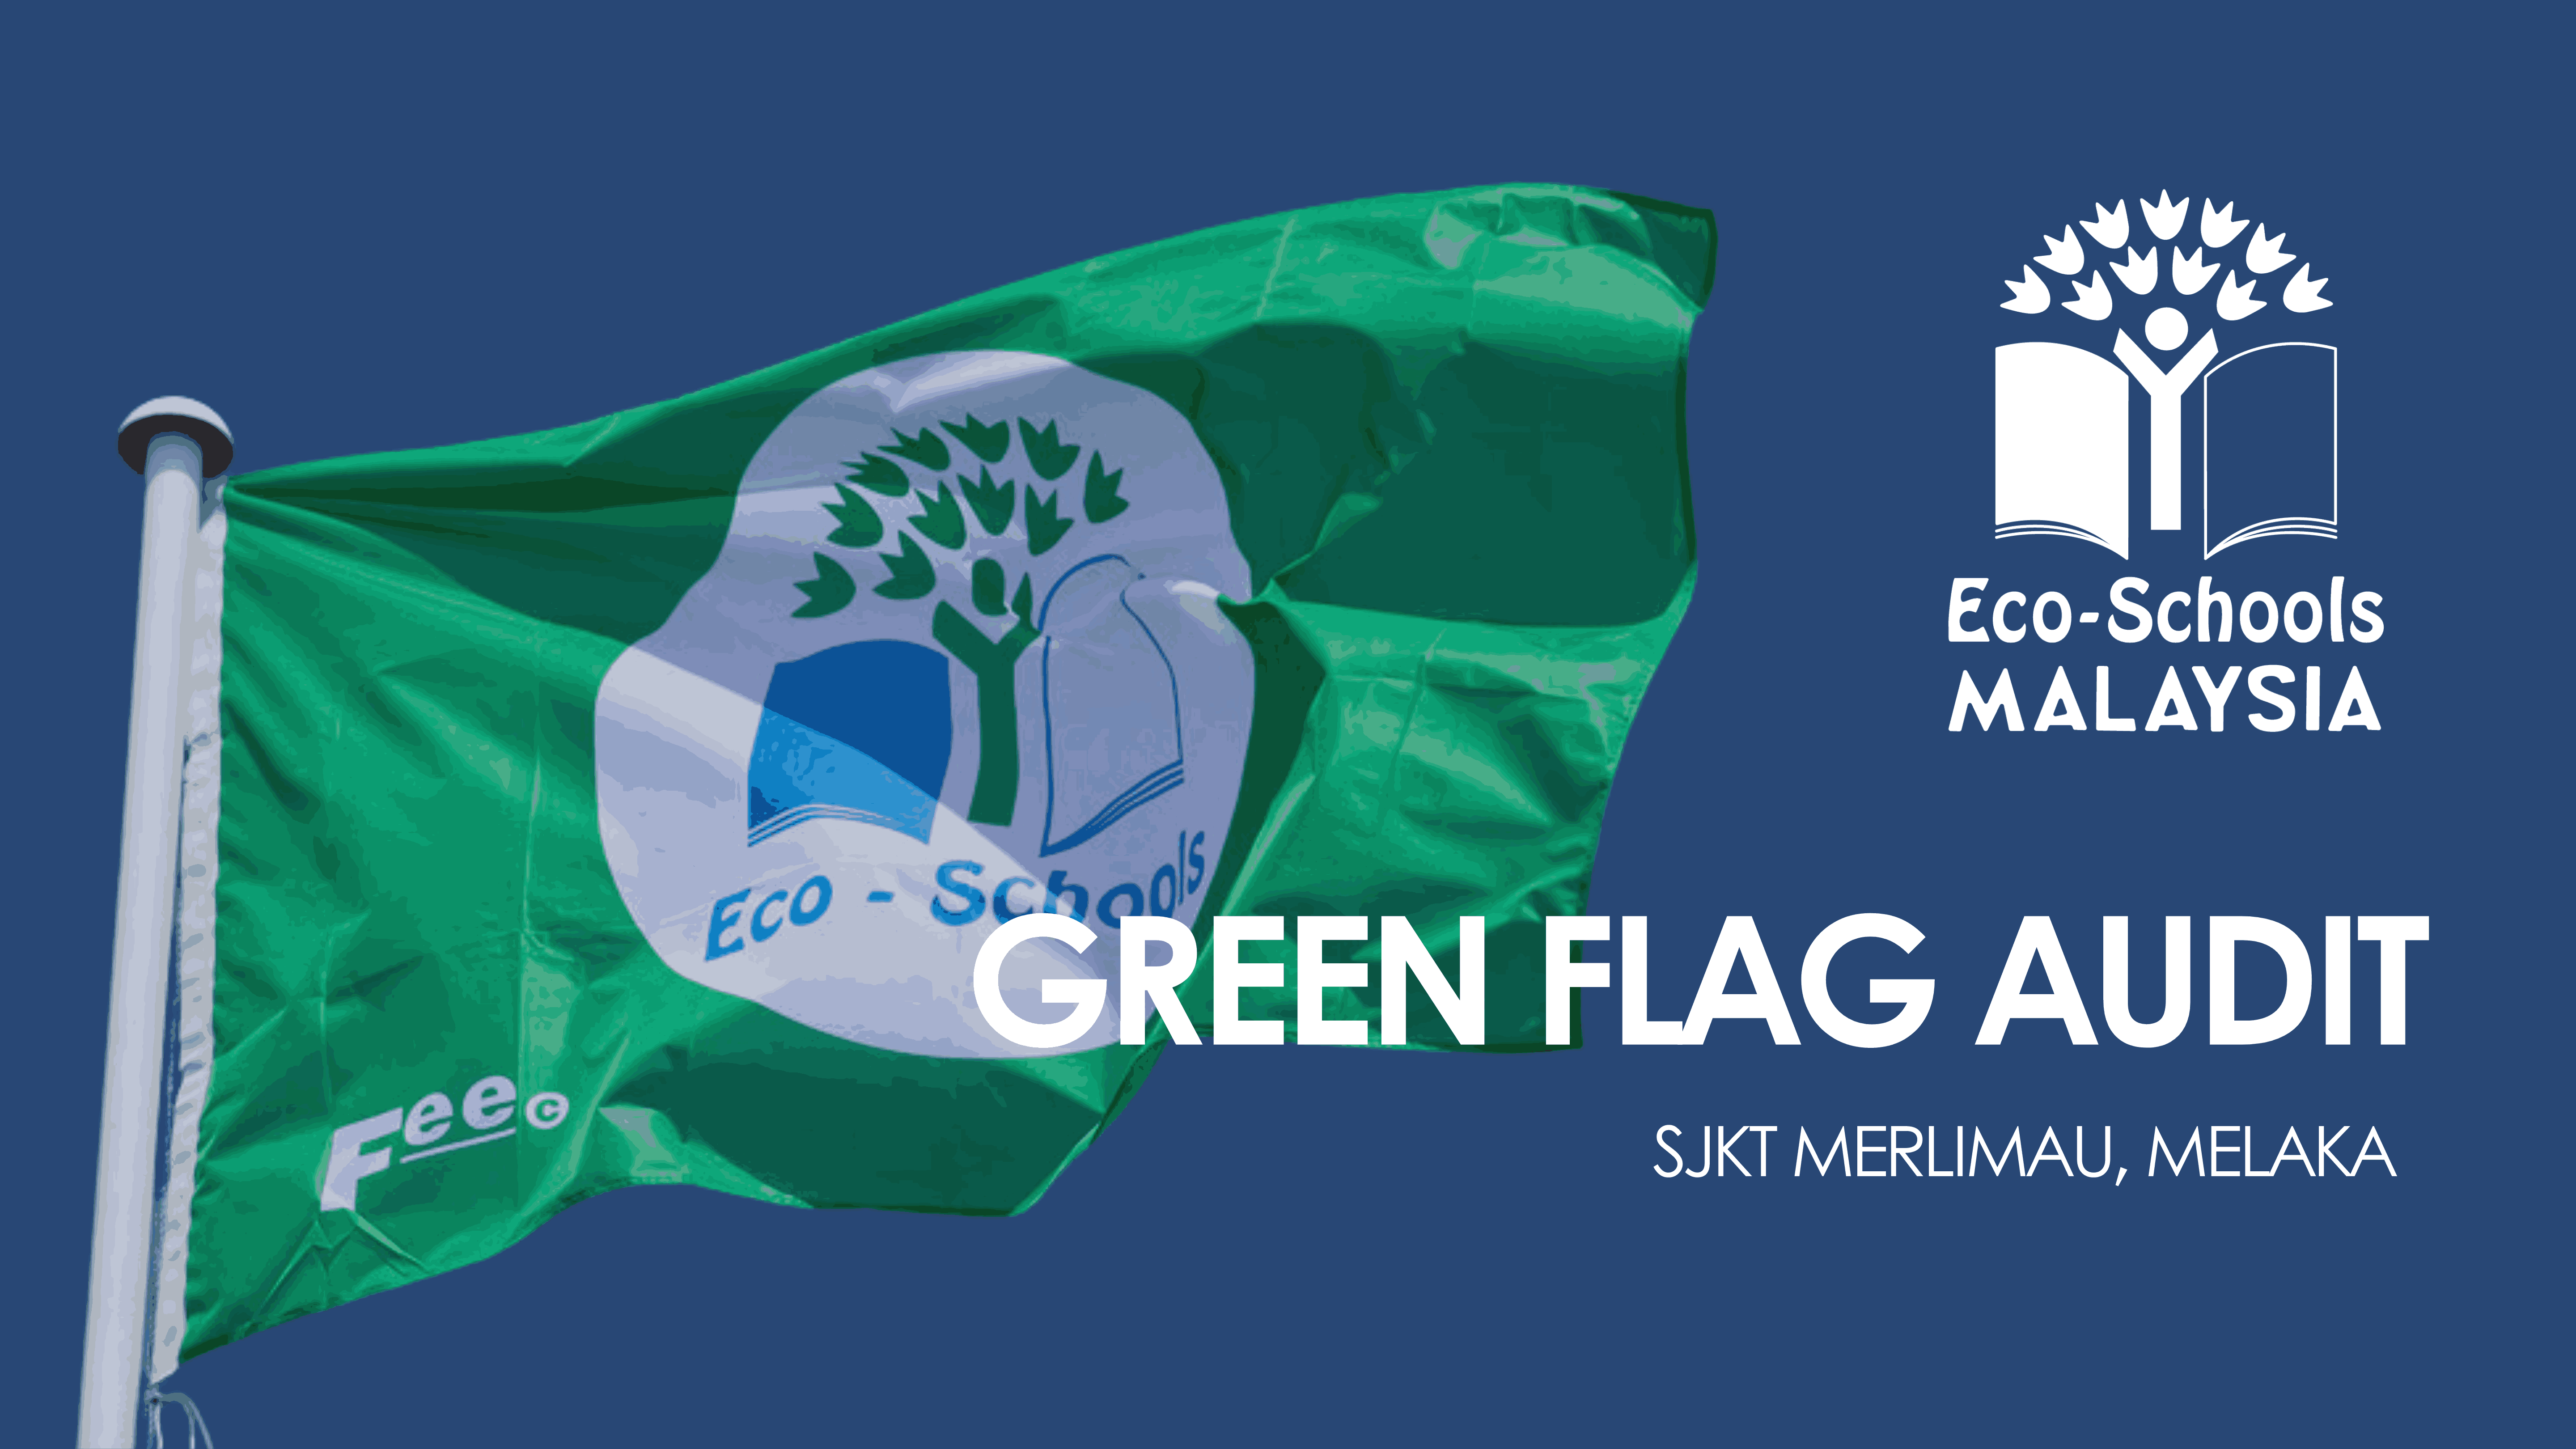 Green Flag Audit - SJKT Merlimau